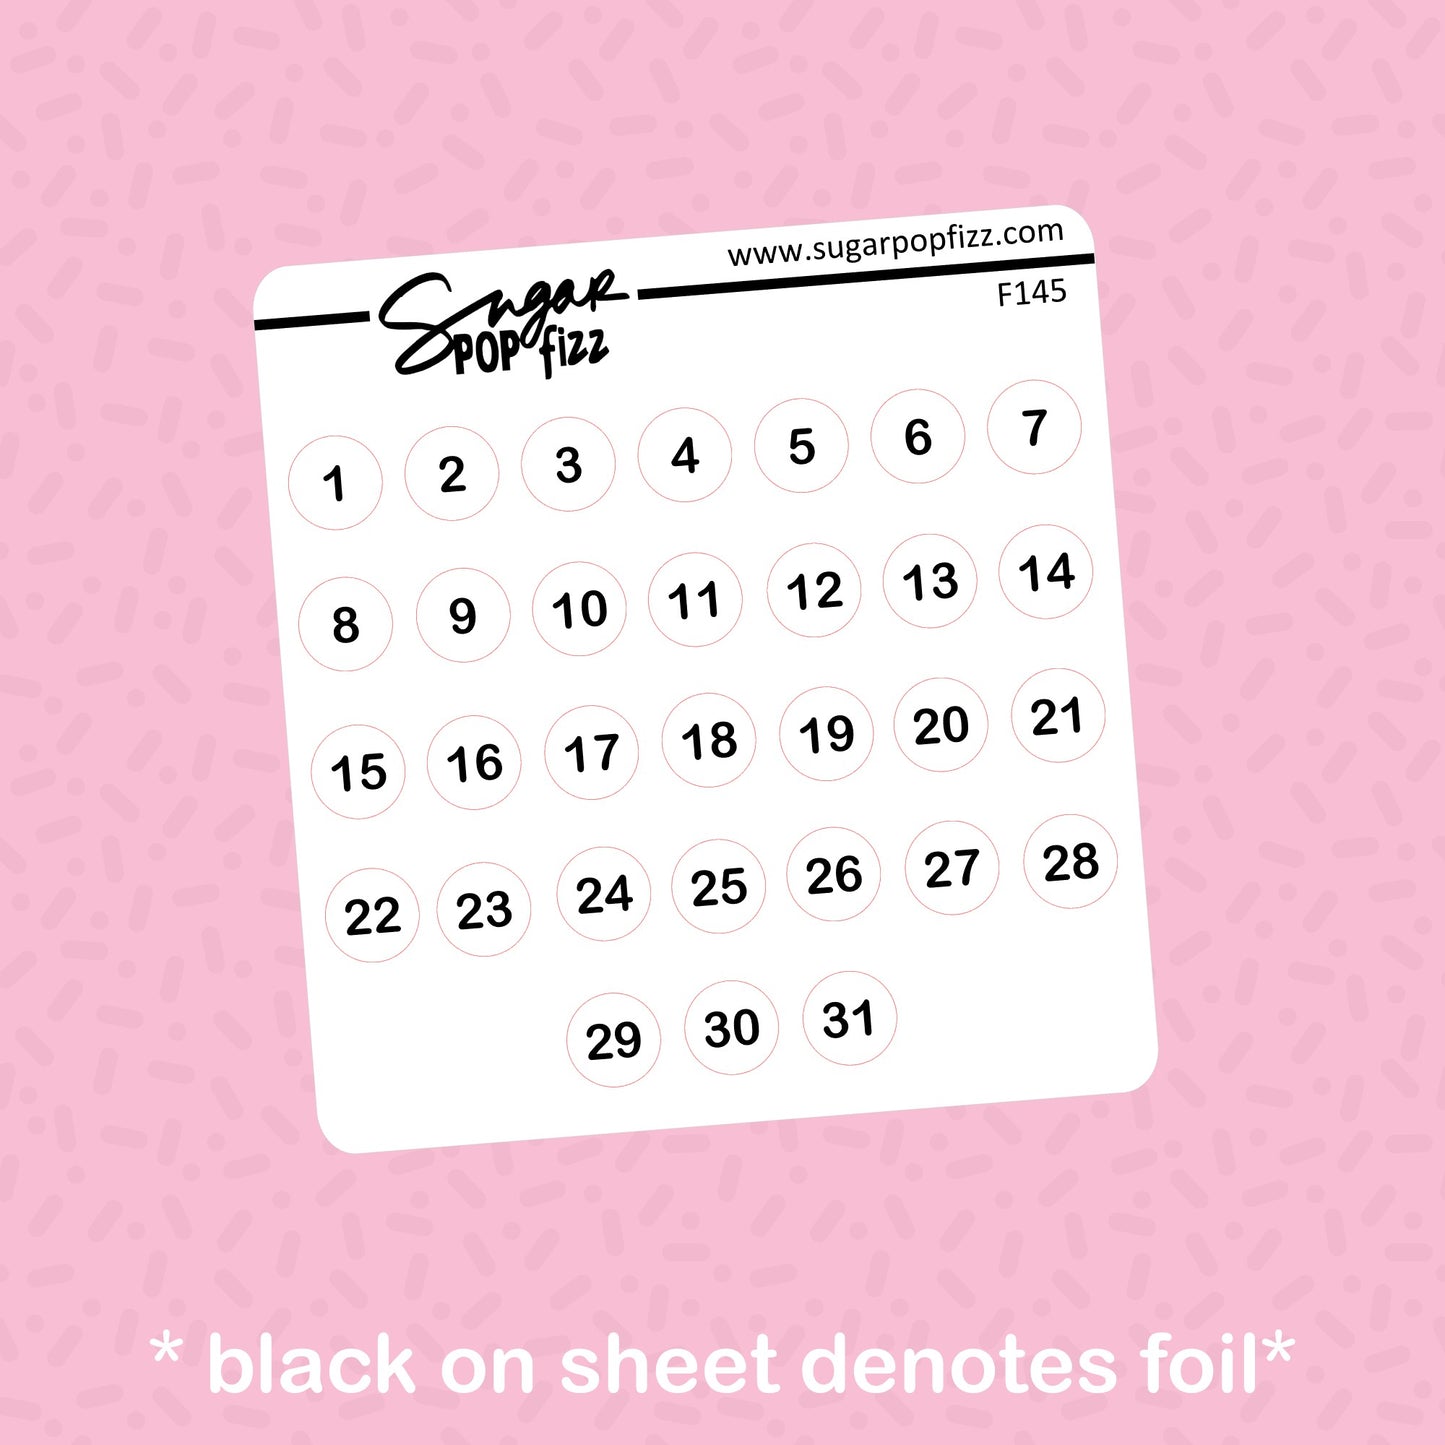 Date Dots Foil Stickers - choose your foil - F145